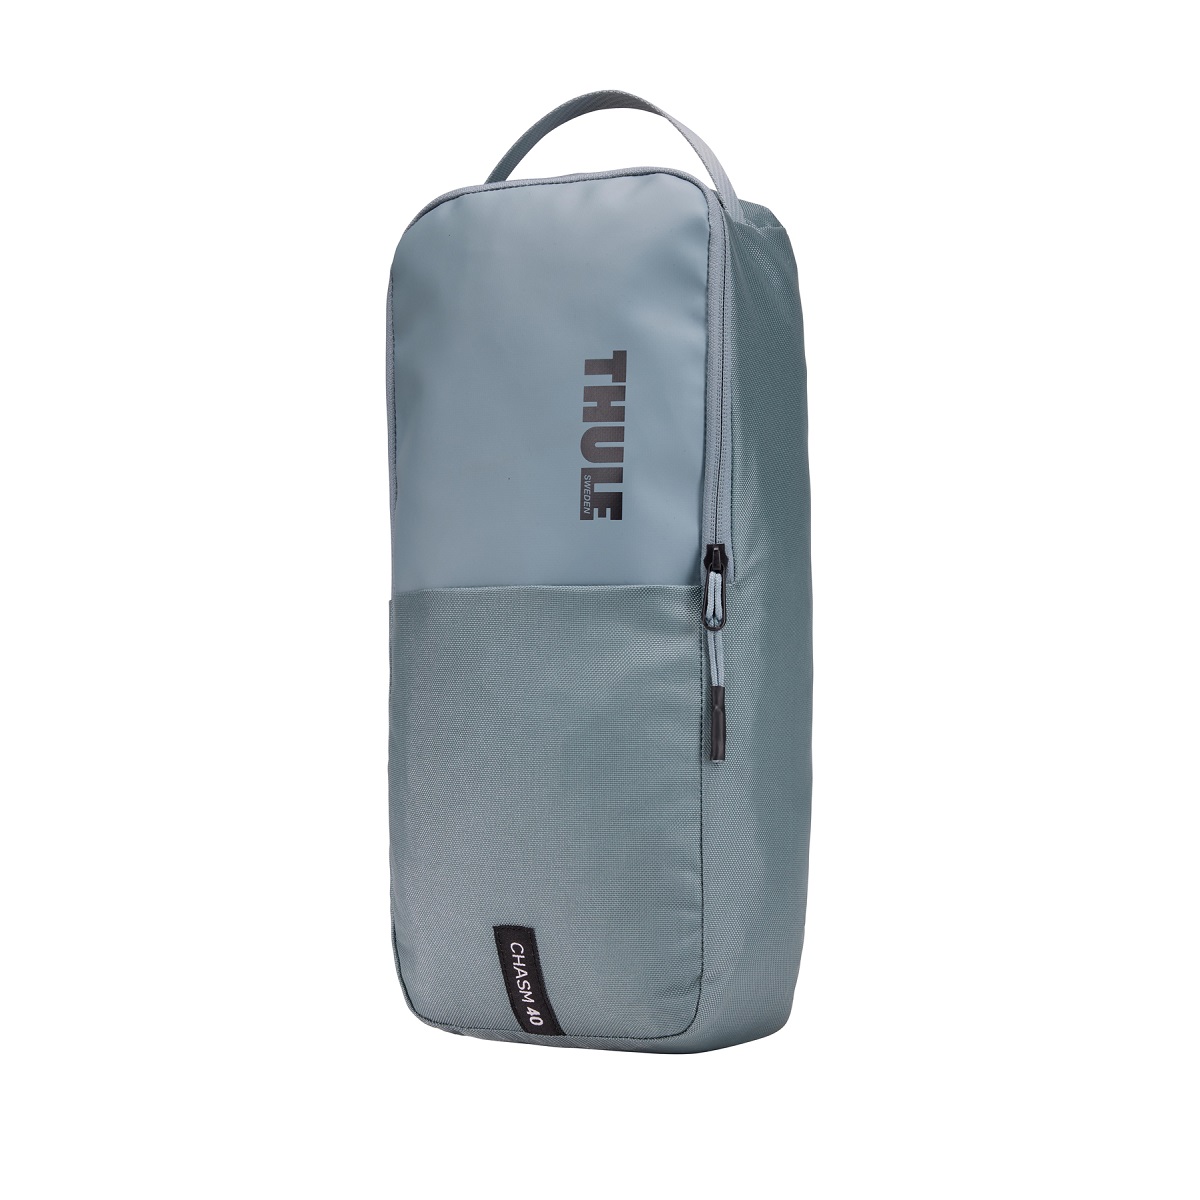 Sportska/putna torba i ruksak 2u1 Thule Chasm 40 L - sivoplava